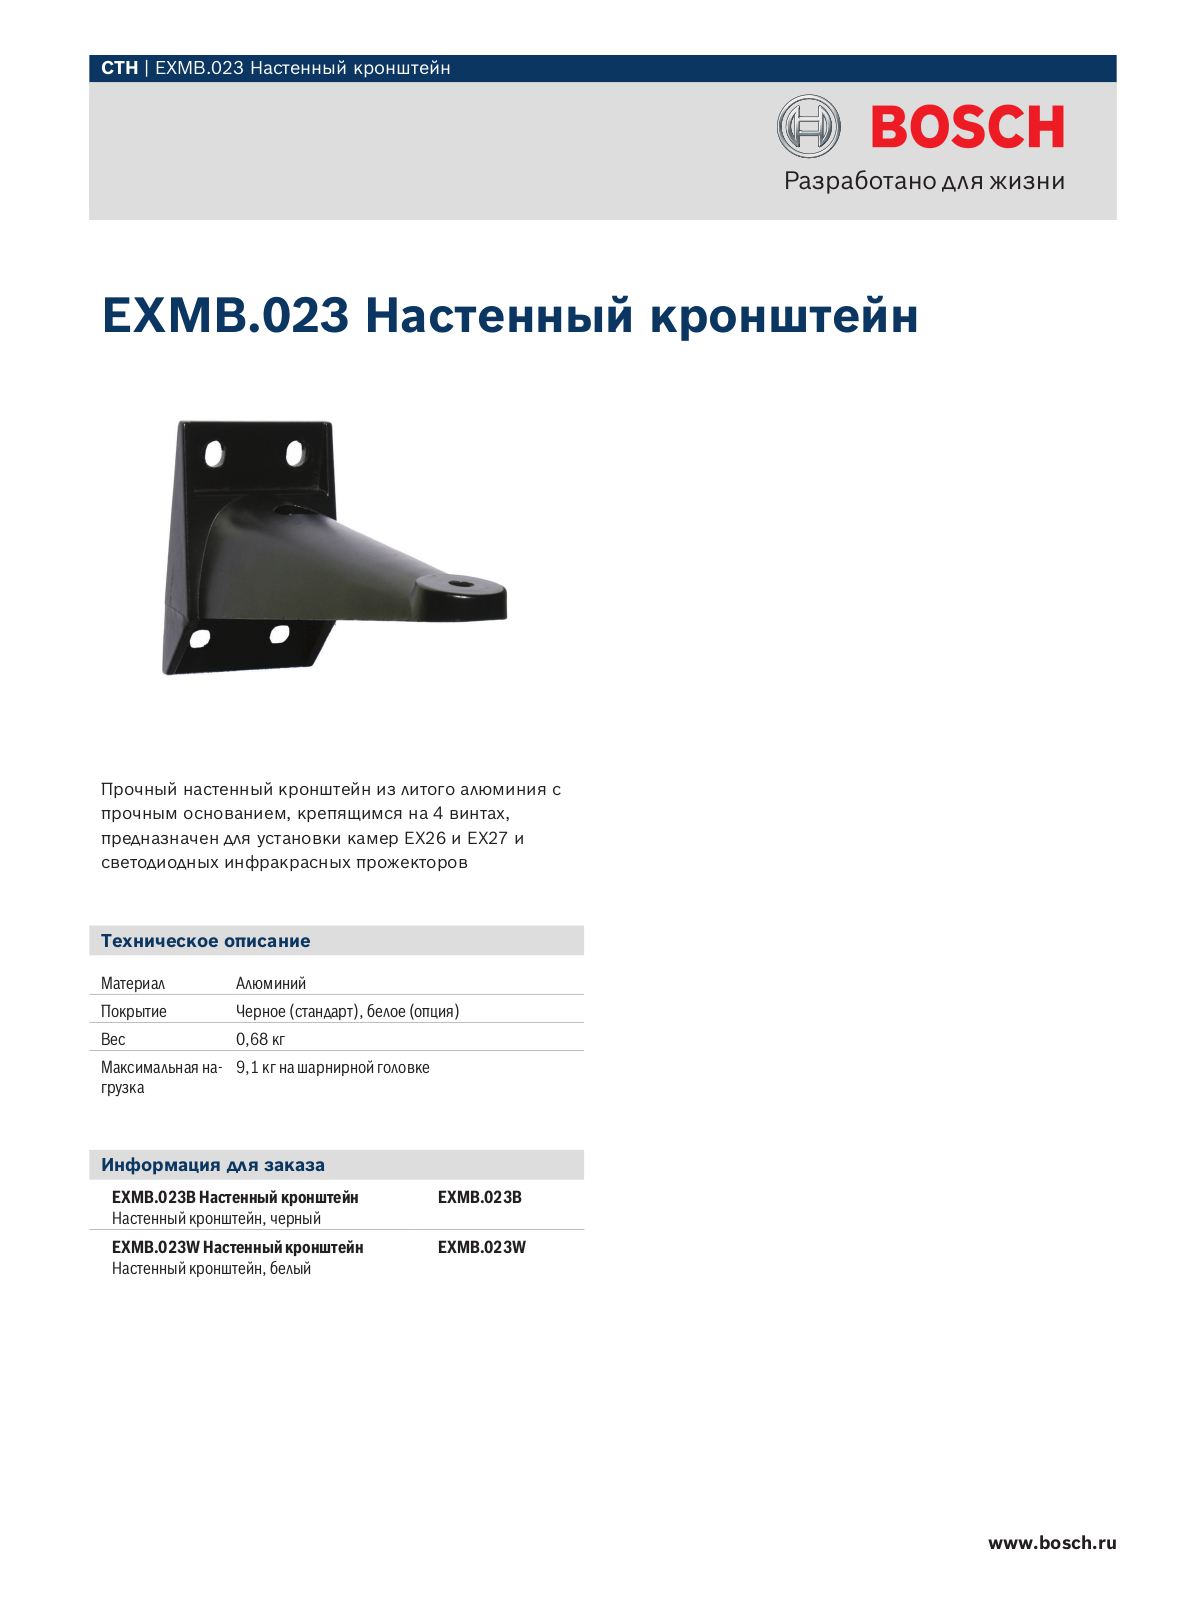 BOSCH EXMB.023 User Manual